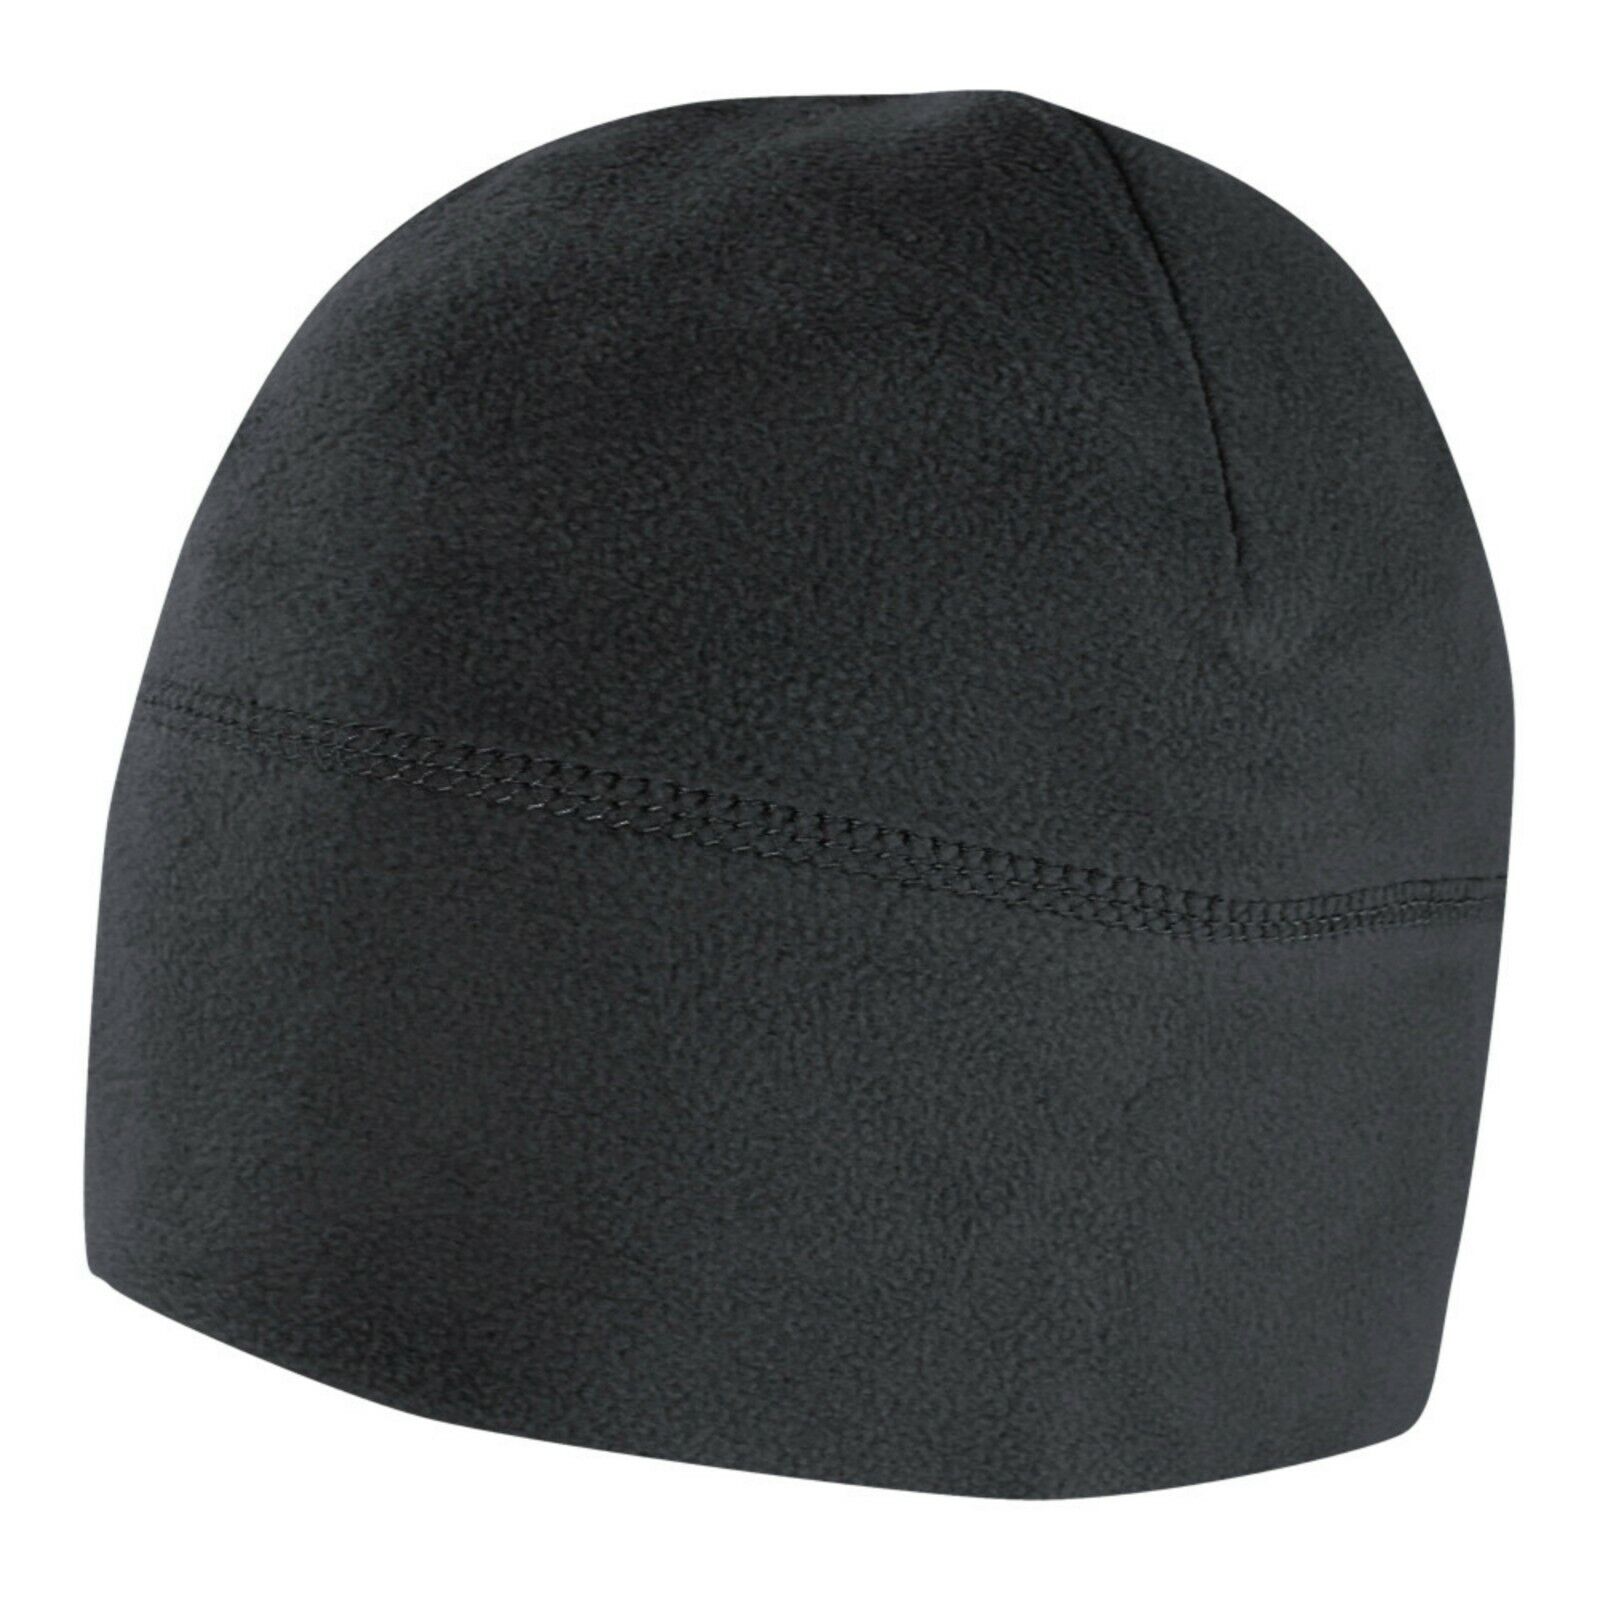 Condor Outdoor Black Cold Weather Micro Fleece Beanie Winter Hat Watch Cap